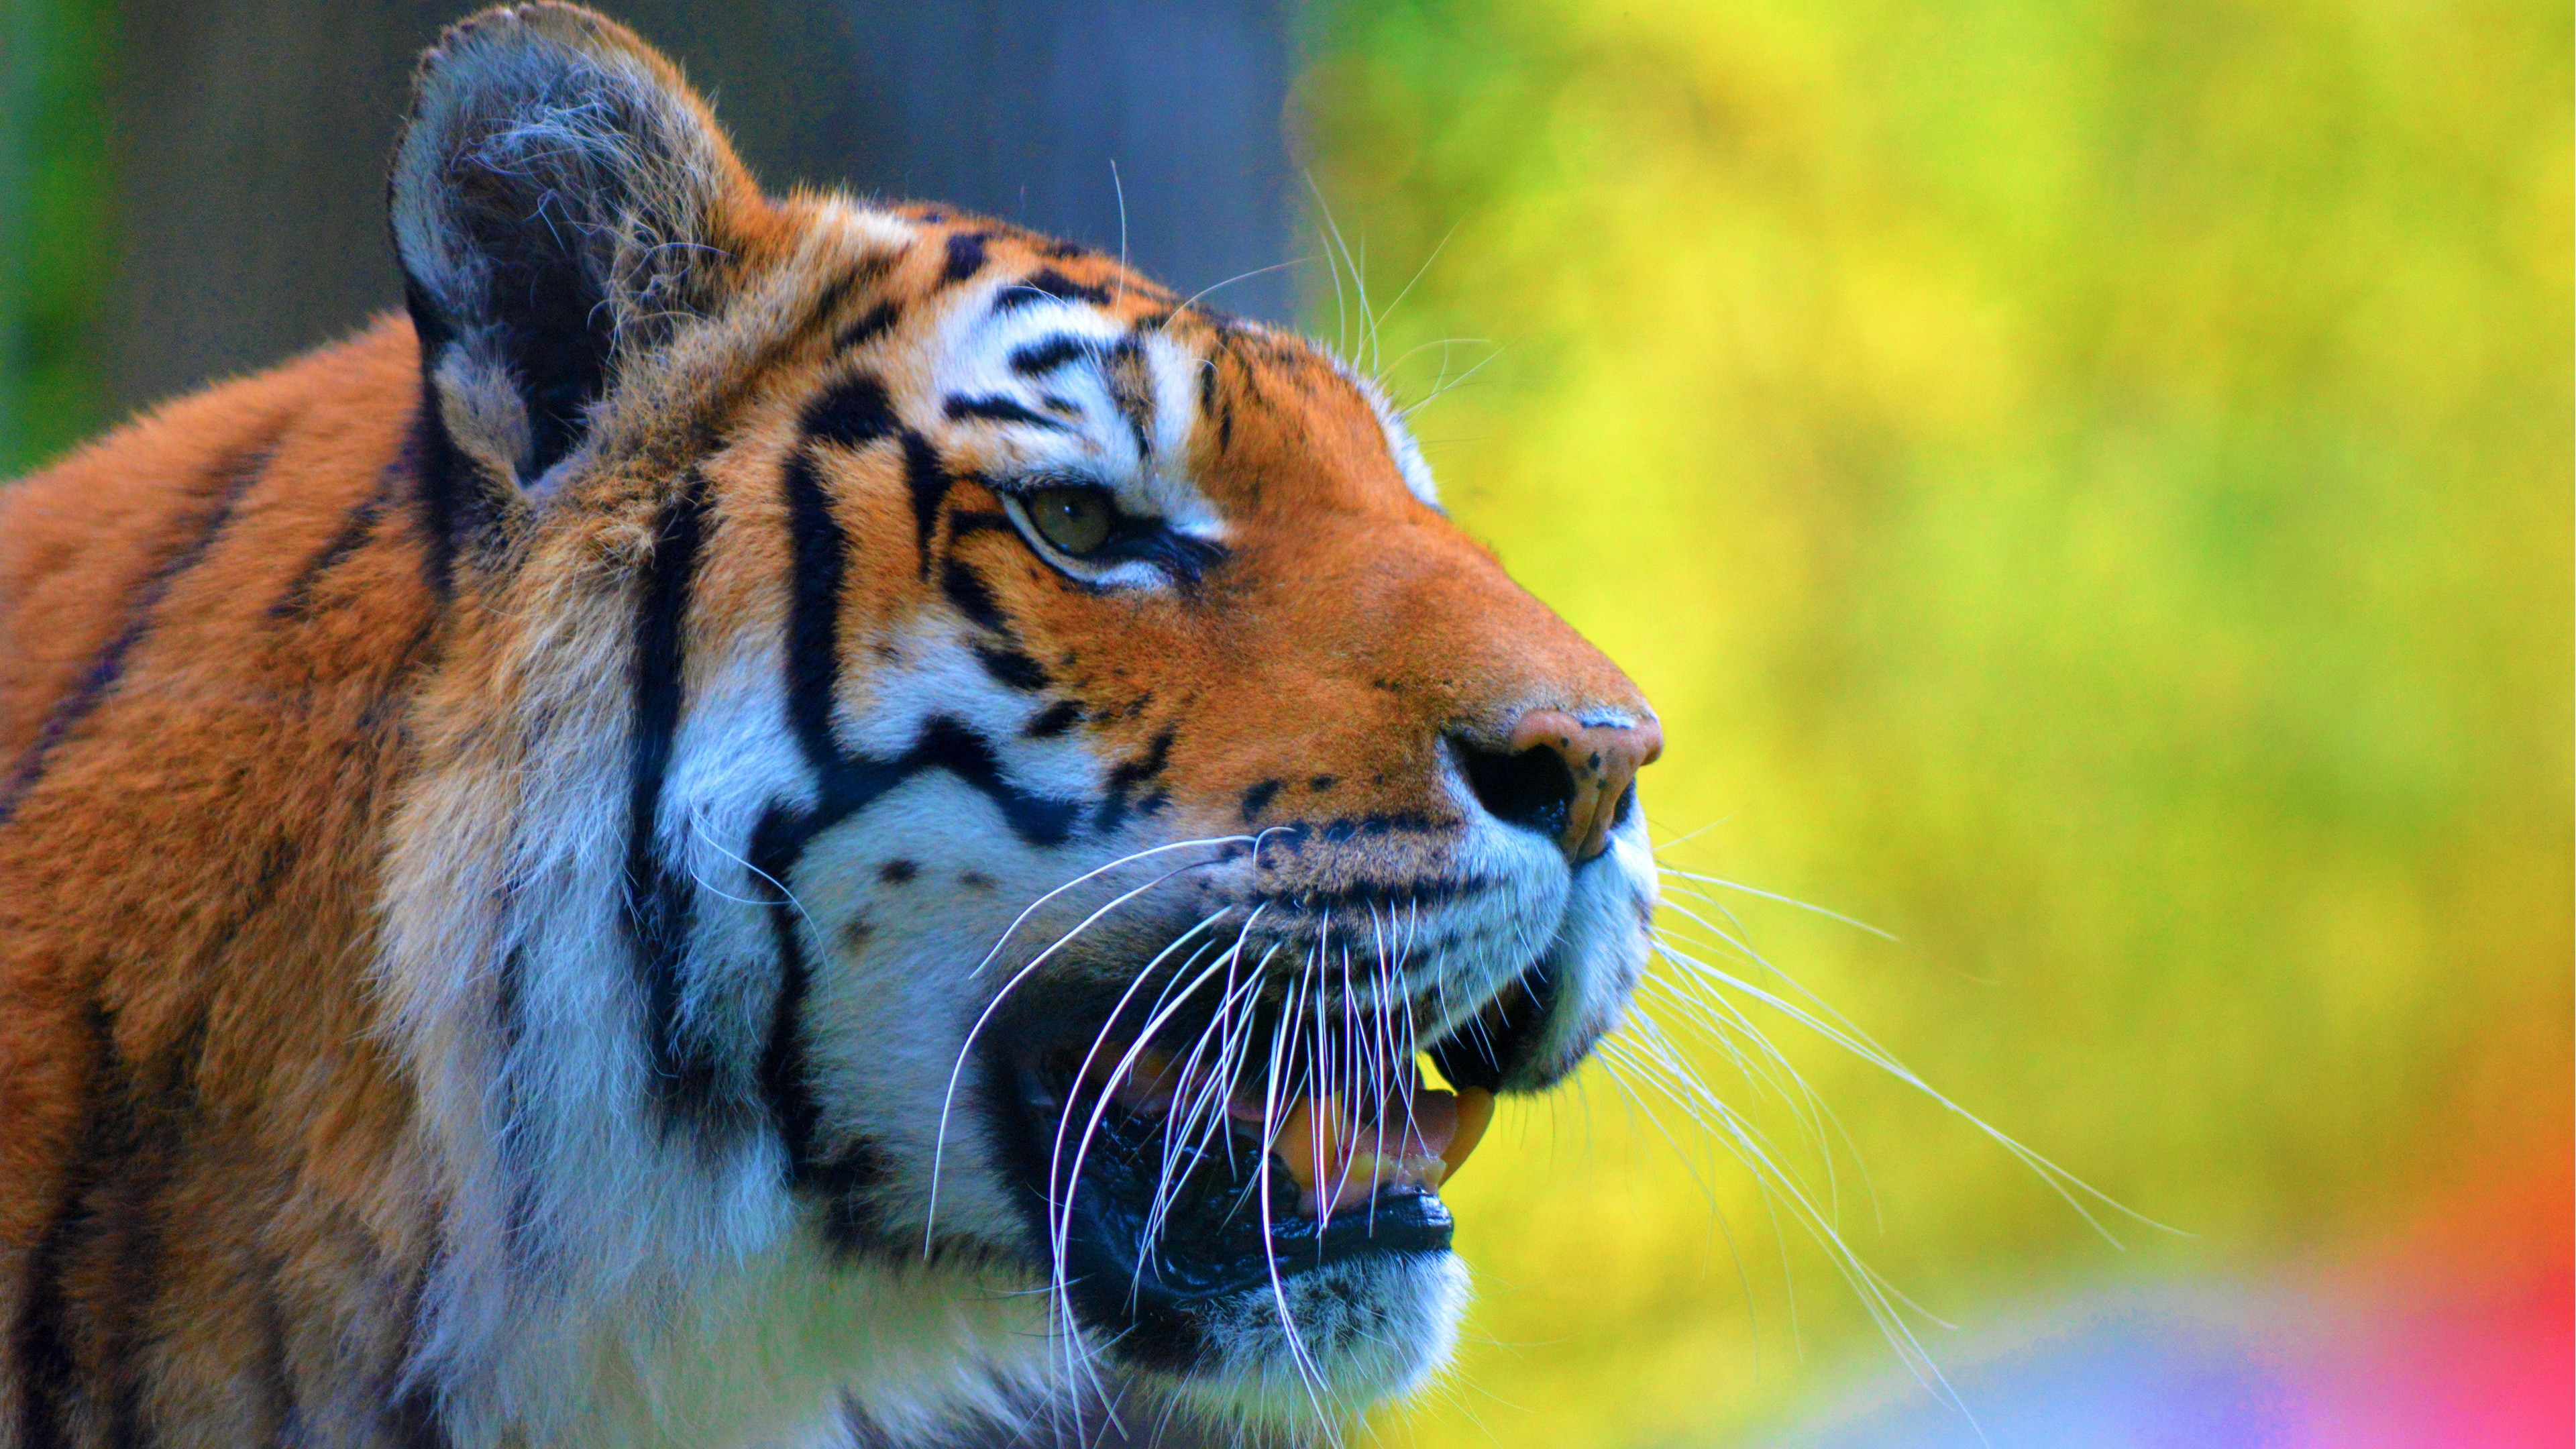 tiger tapete,tiger,tierwelt,bengalischer tiger,landtier,schnurrhaare